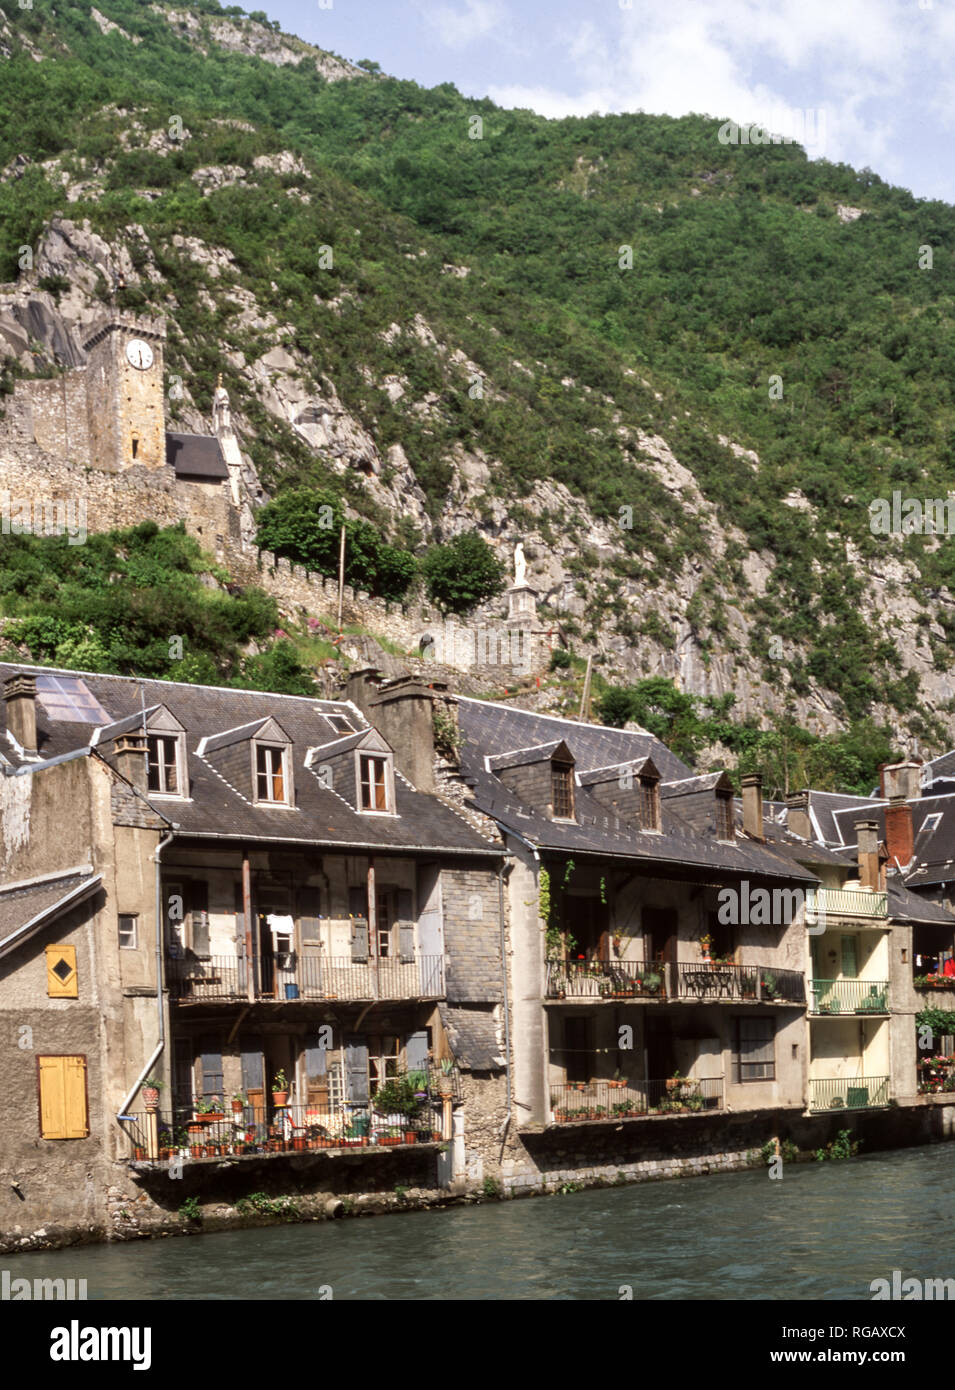 Die kleine Stadt St. Beat liegt in den Ausläufern der französischen Pyrenäen. Diese Häuser bieten einen Blick auf den Fluss Garonne. A12c Schloss mit Blick auf die Stadt. Stockfoto